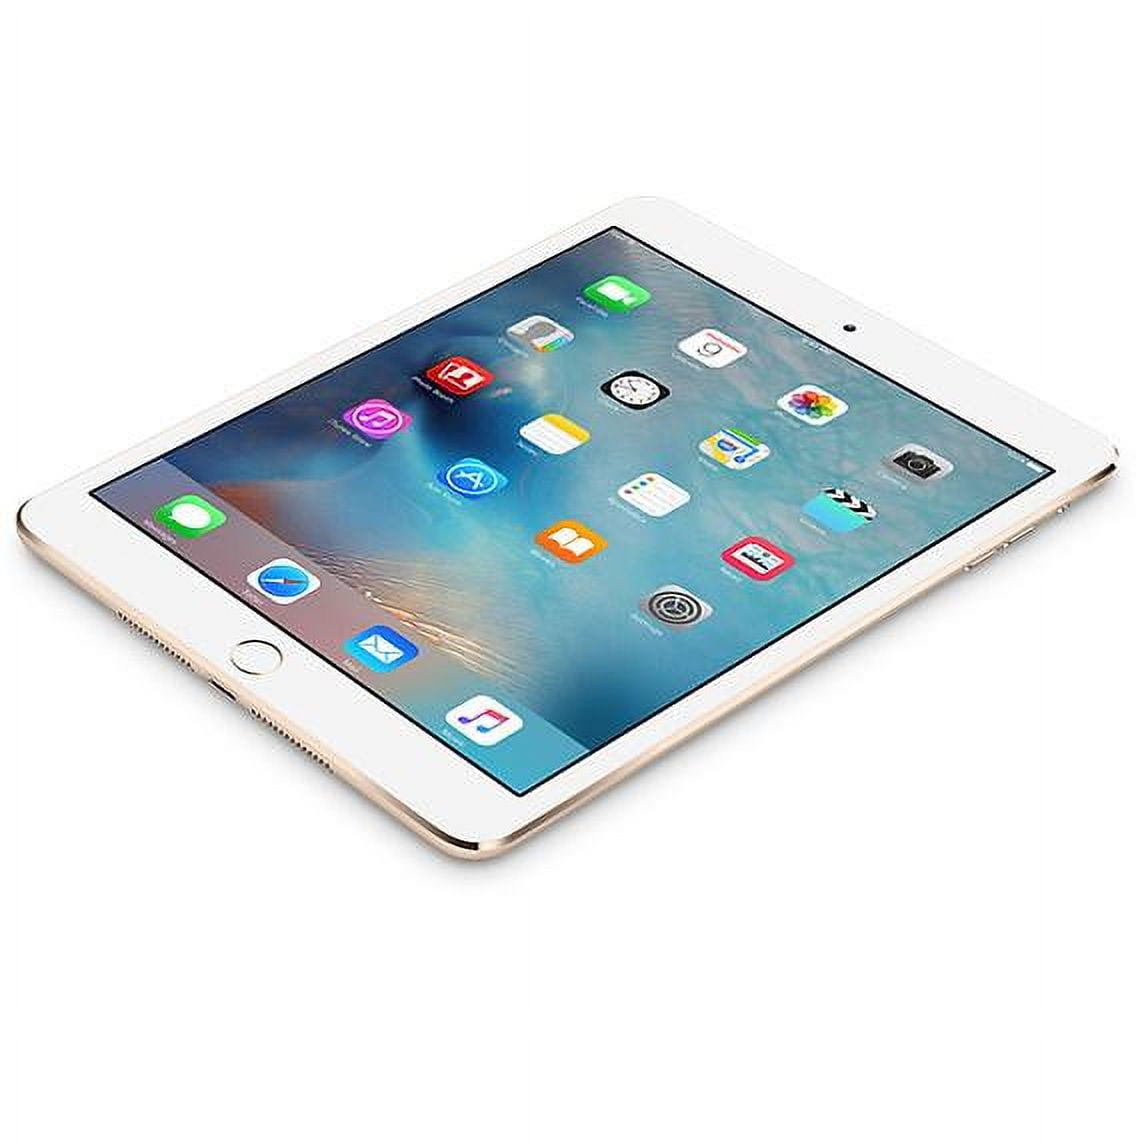 Restored Apple iPad Mini 4 128GB Space Gray Wi-Fi MK9N2LL/A 